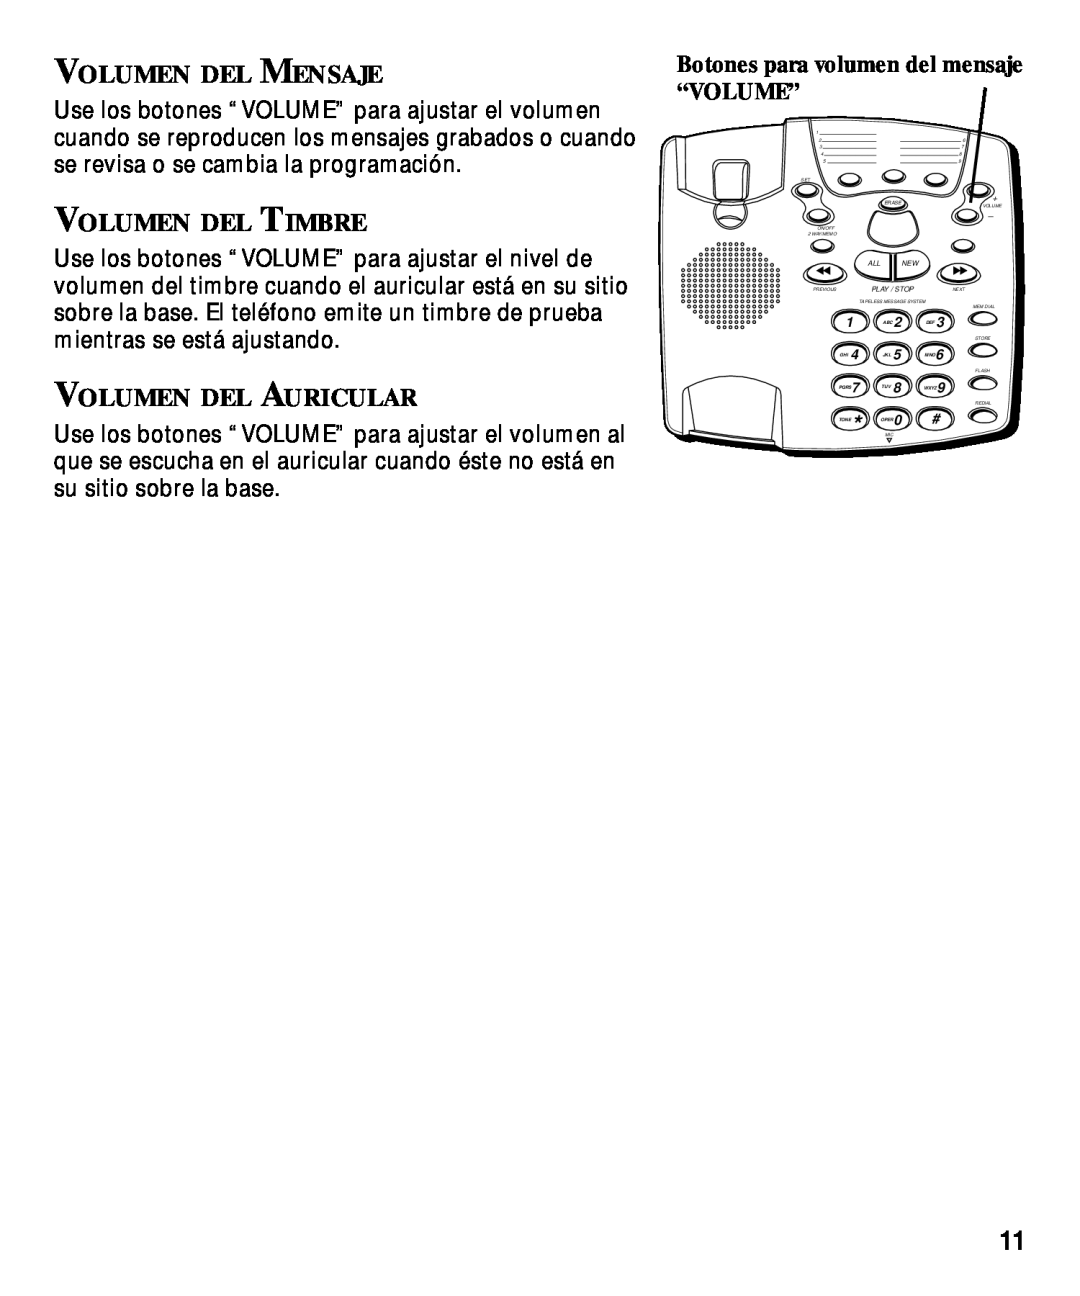 GE 29870 Series Volumen Del Mensaje, Volumen Del Timbre, Volumen Del Auricular, Botones para volumen del mensaje “VOLUME” 